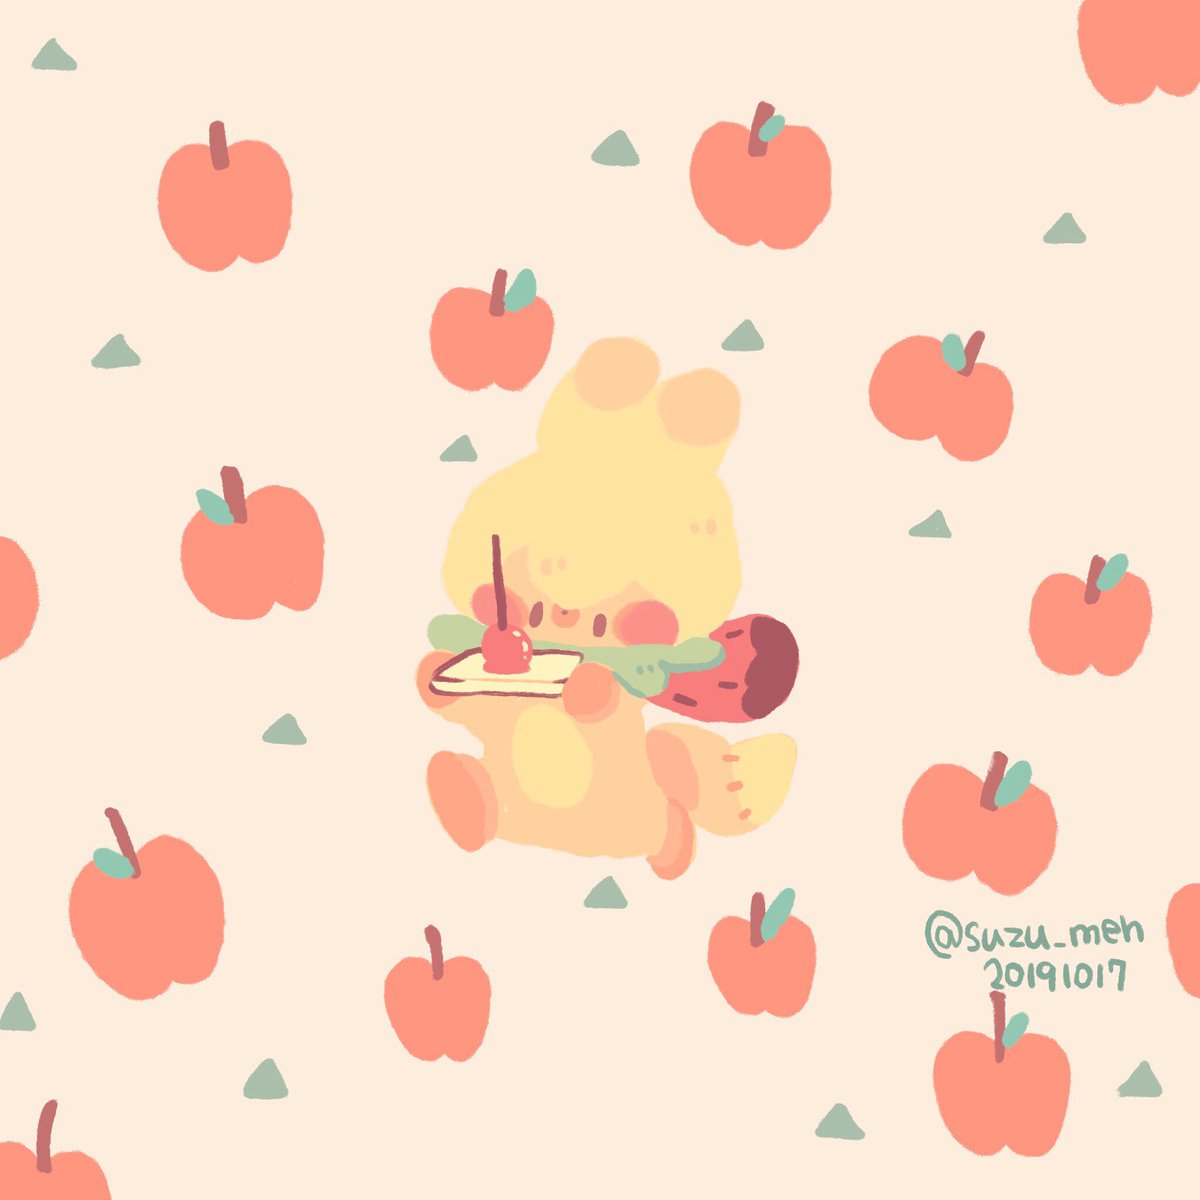 تويتر ササクラ على تويتر りんご飴 食べてみたいなぁ イラスト 絵 絵描き 癒し かわいい キツネ りんご飴 りんご いちご メーとスズメの友達 T Co Iqkjwpjwqn